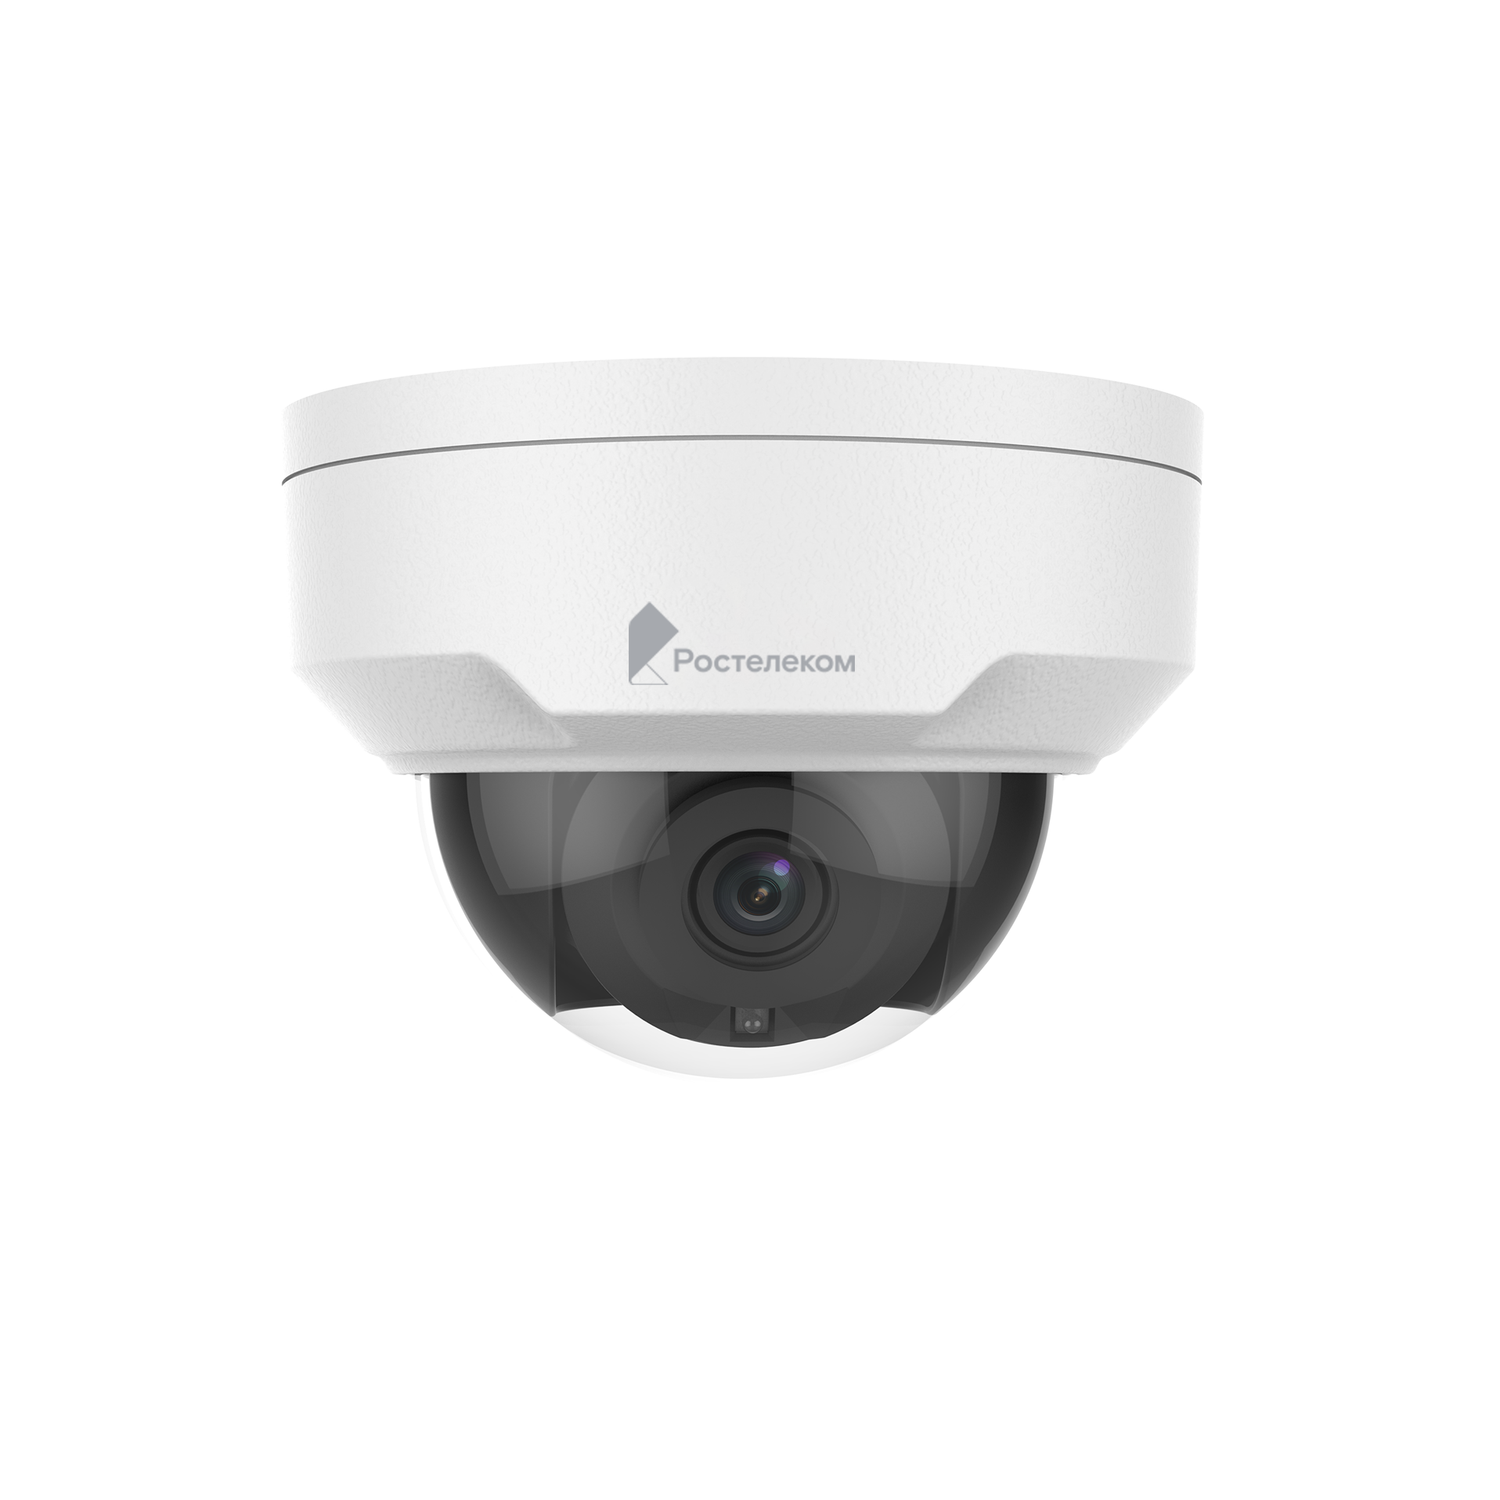 Камера системы видеонаблюдения Ростелеком внешняя LOW уличная купольная IPC322SR3-VSPF28-C со стеклянным куполом для любой погоды - фото 1